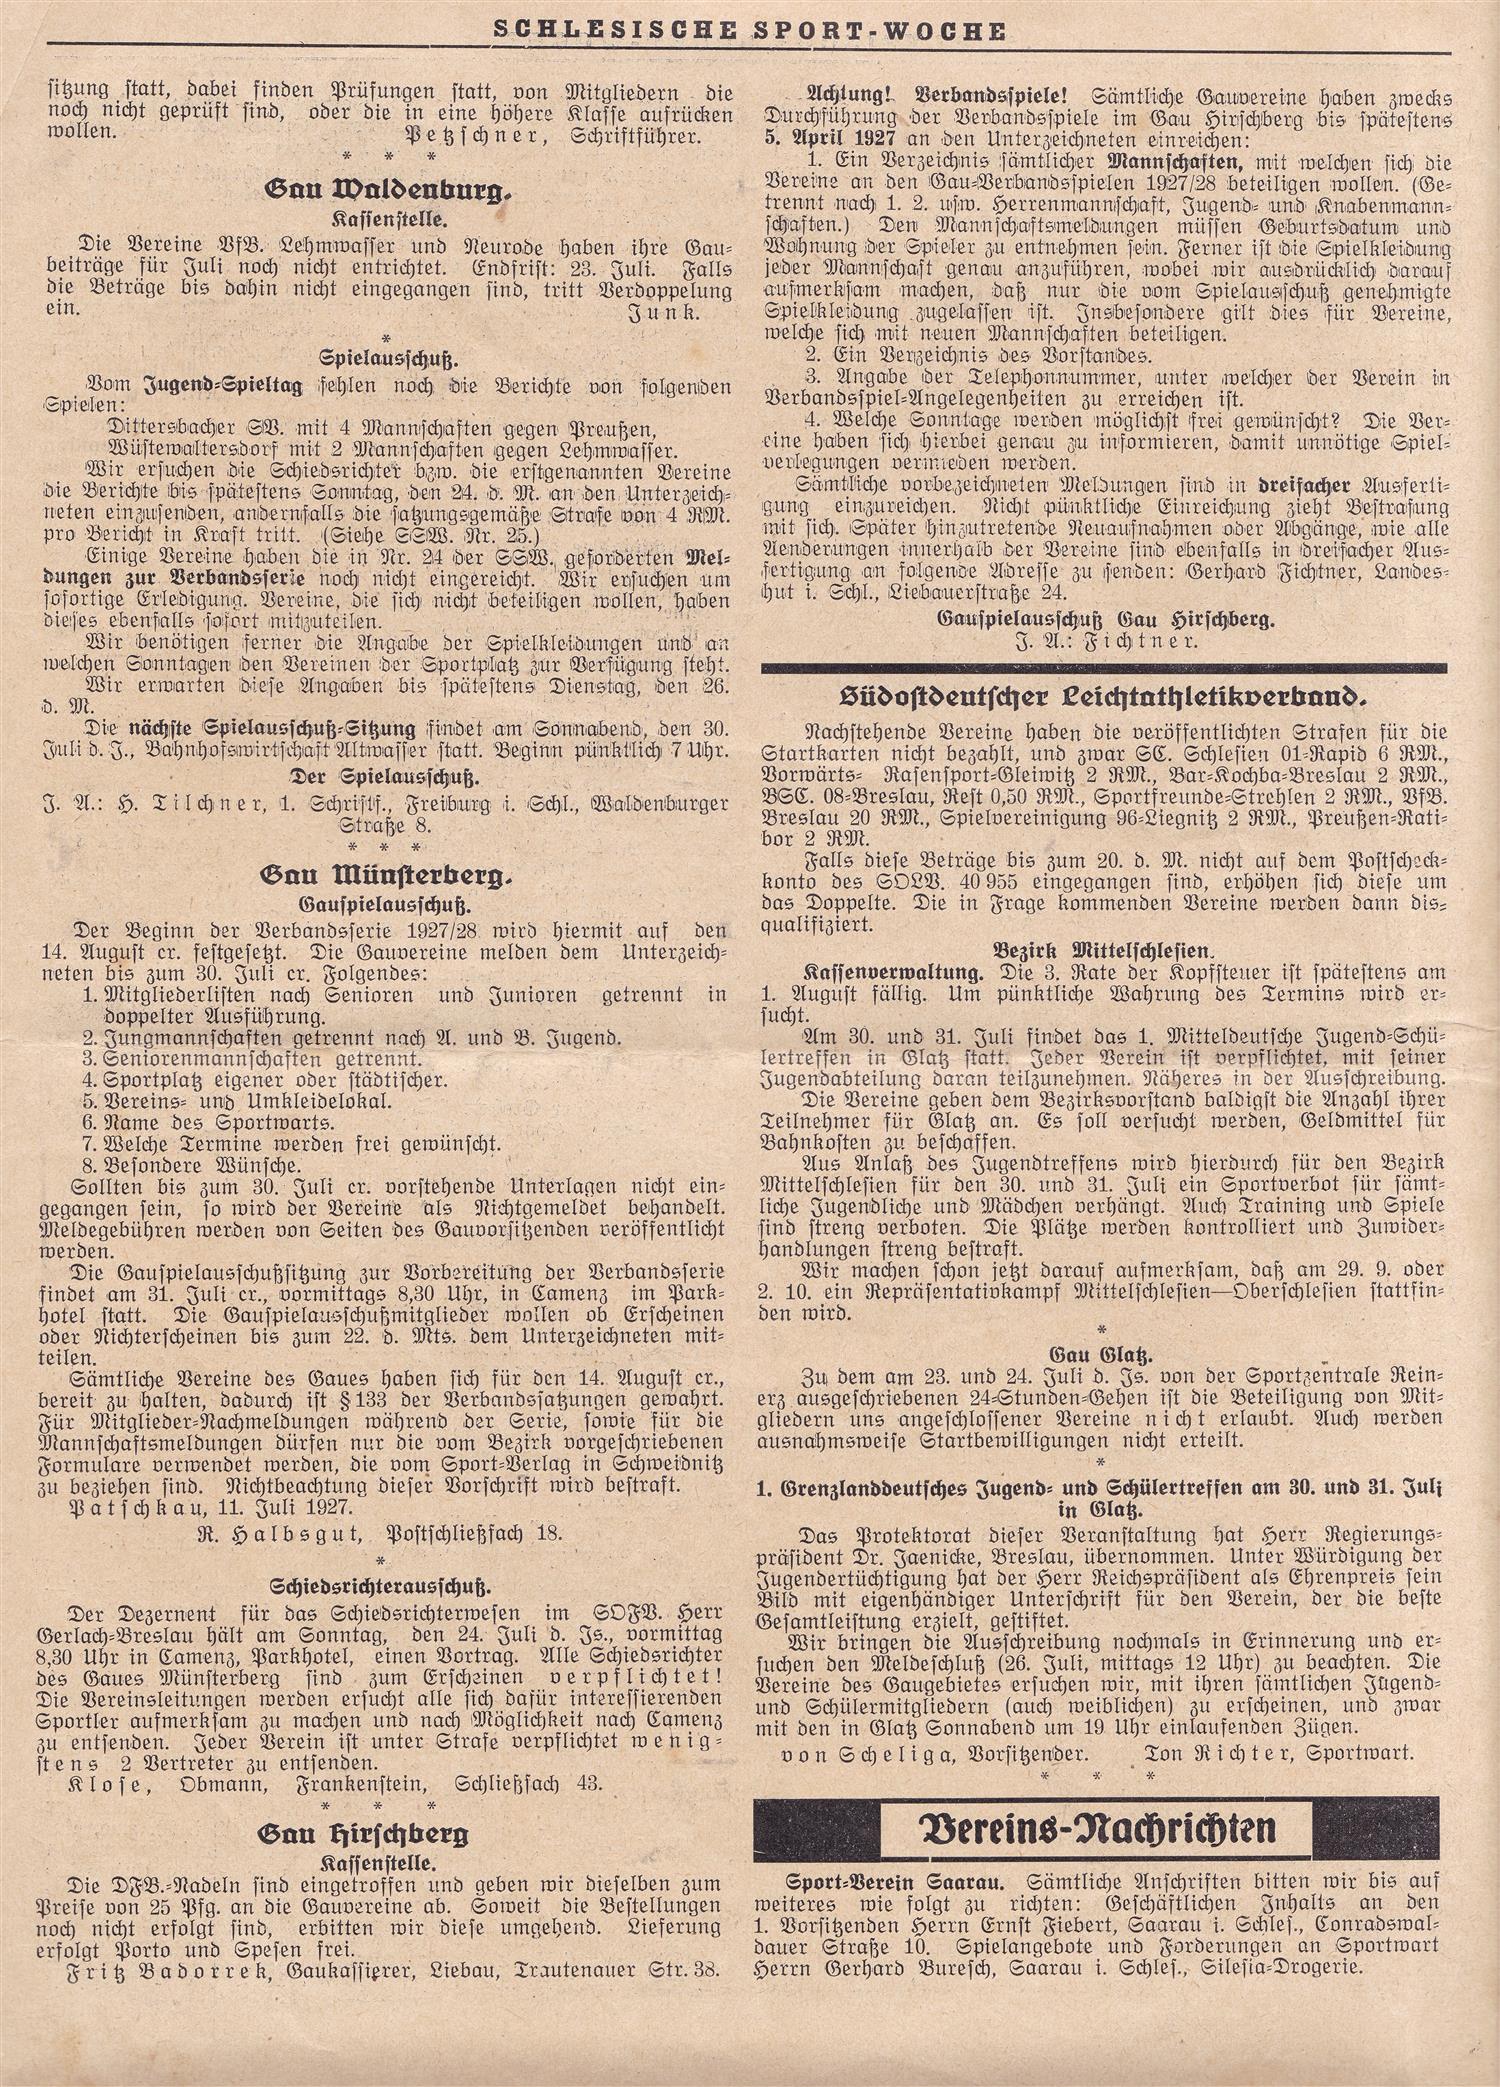 Schlesiche Sport Woche 19 07 1927 (1)